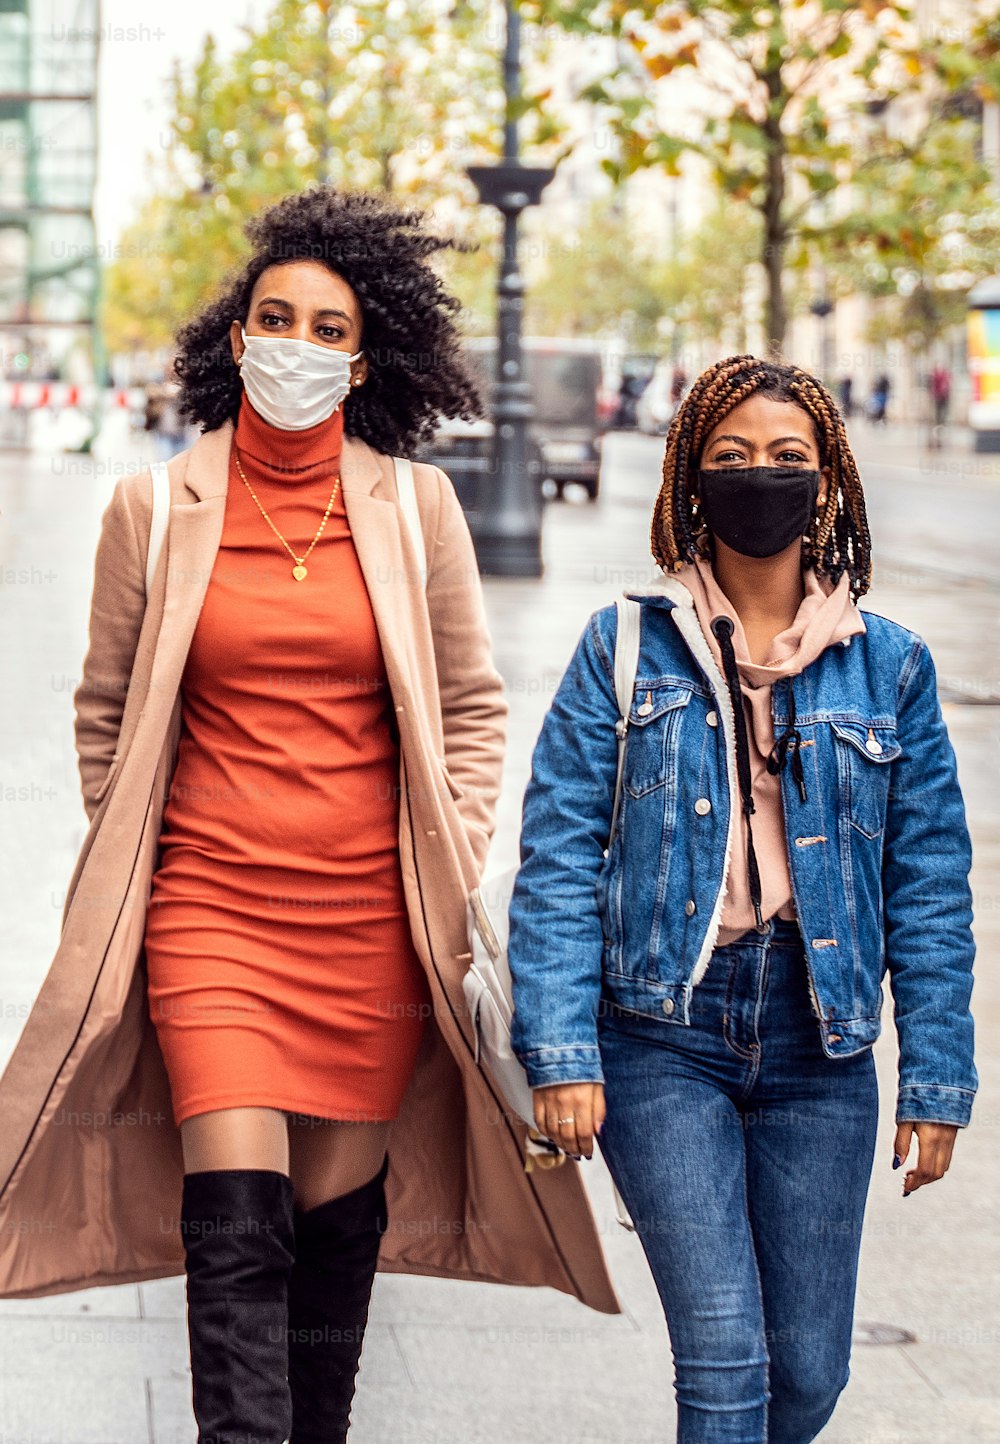 Deux amies afro marchant dans la rue de la ville avec un masque de protection. C’est l’heure de la pandémie. Concept de style de vie des jeunes.